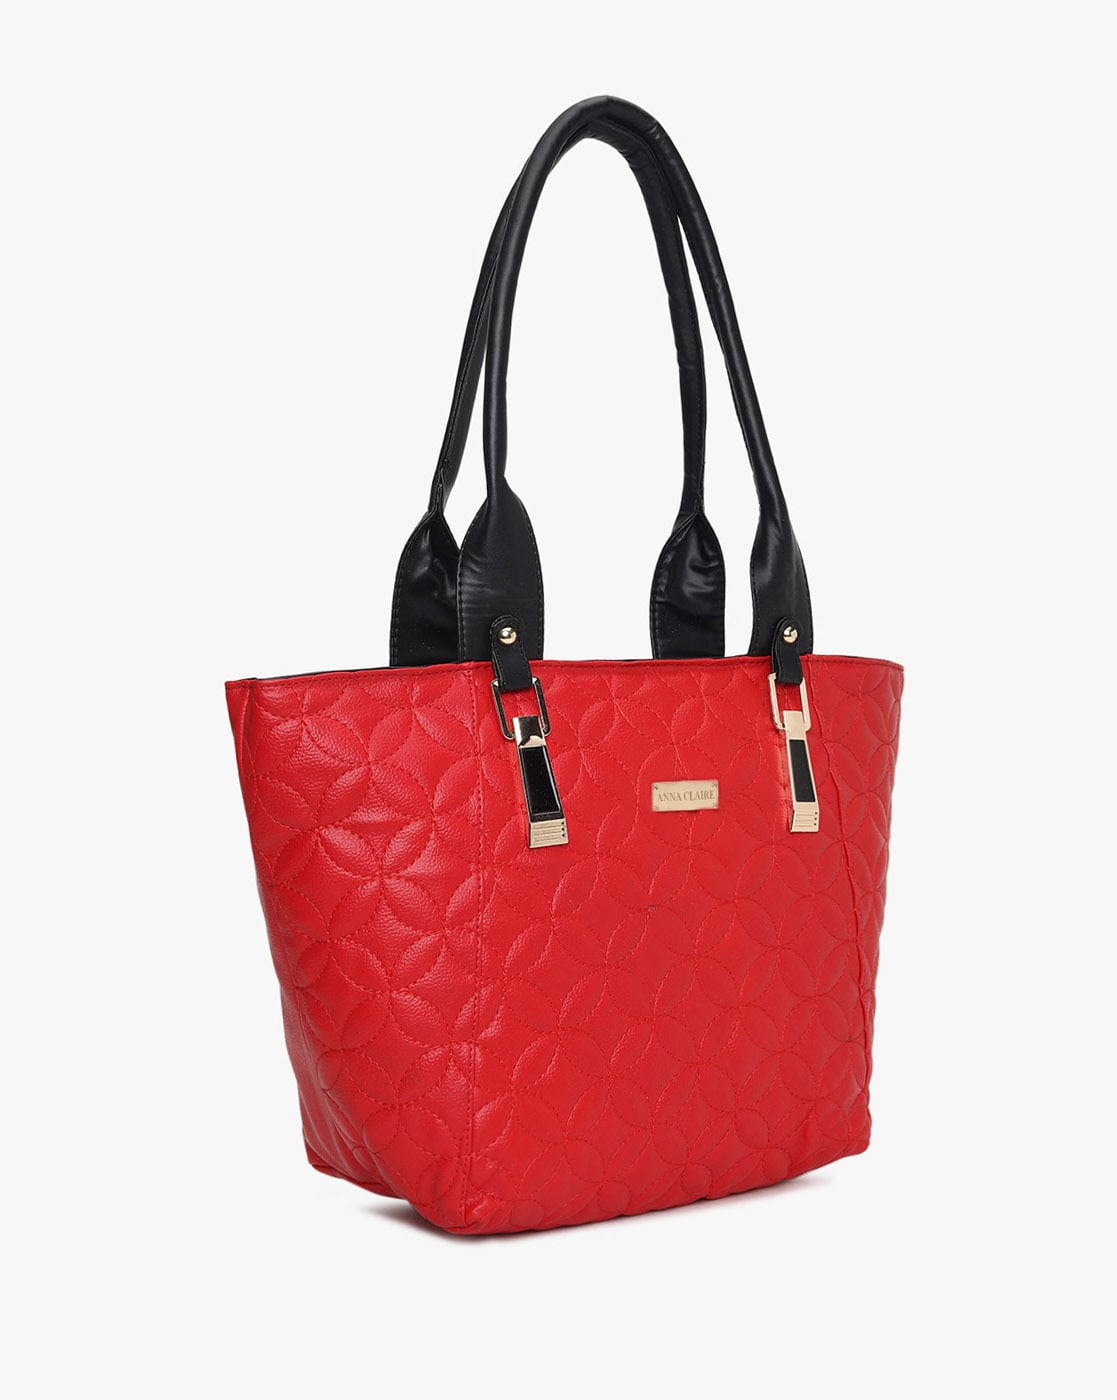 New Gigi Olivia Purse Handbag Pink With Red, Orange India | Ubuy